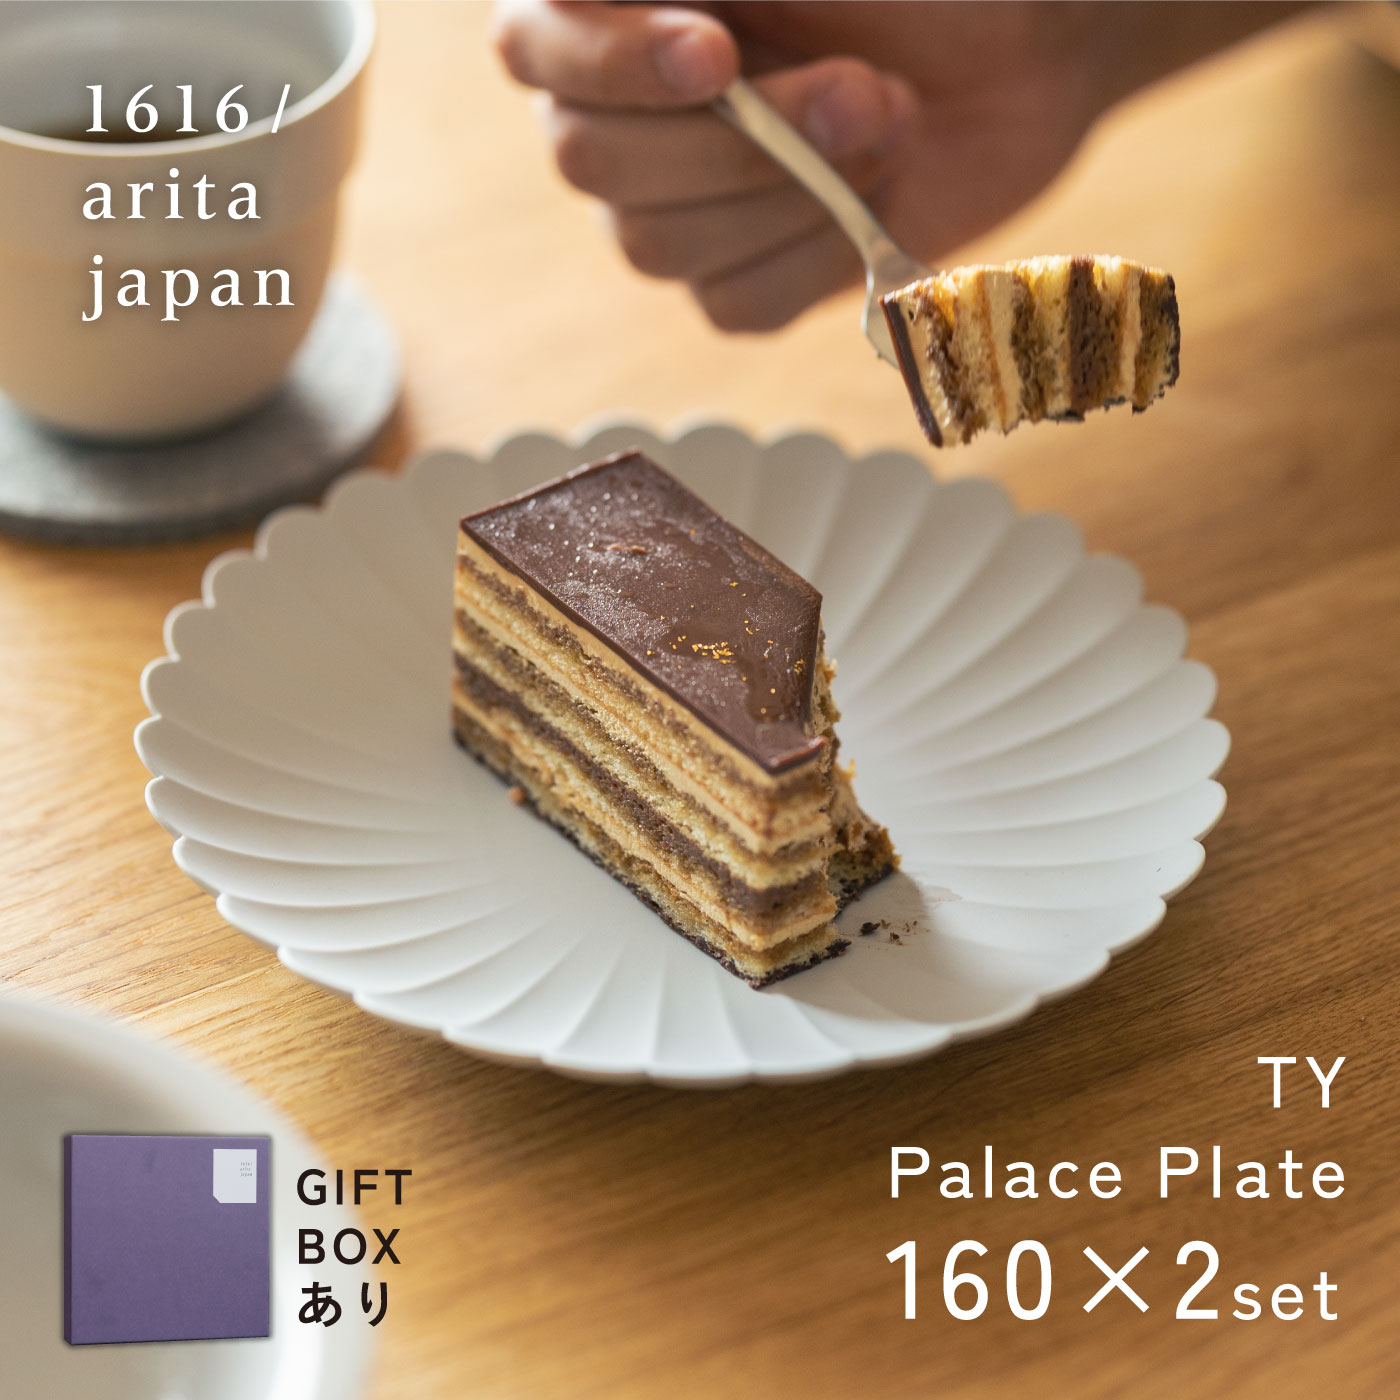 【楽天市場】1616/arita japan TY パレスプレート 160 [レビュー特典 